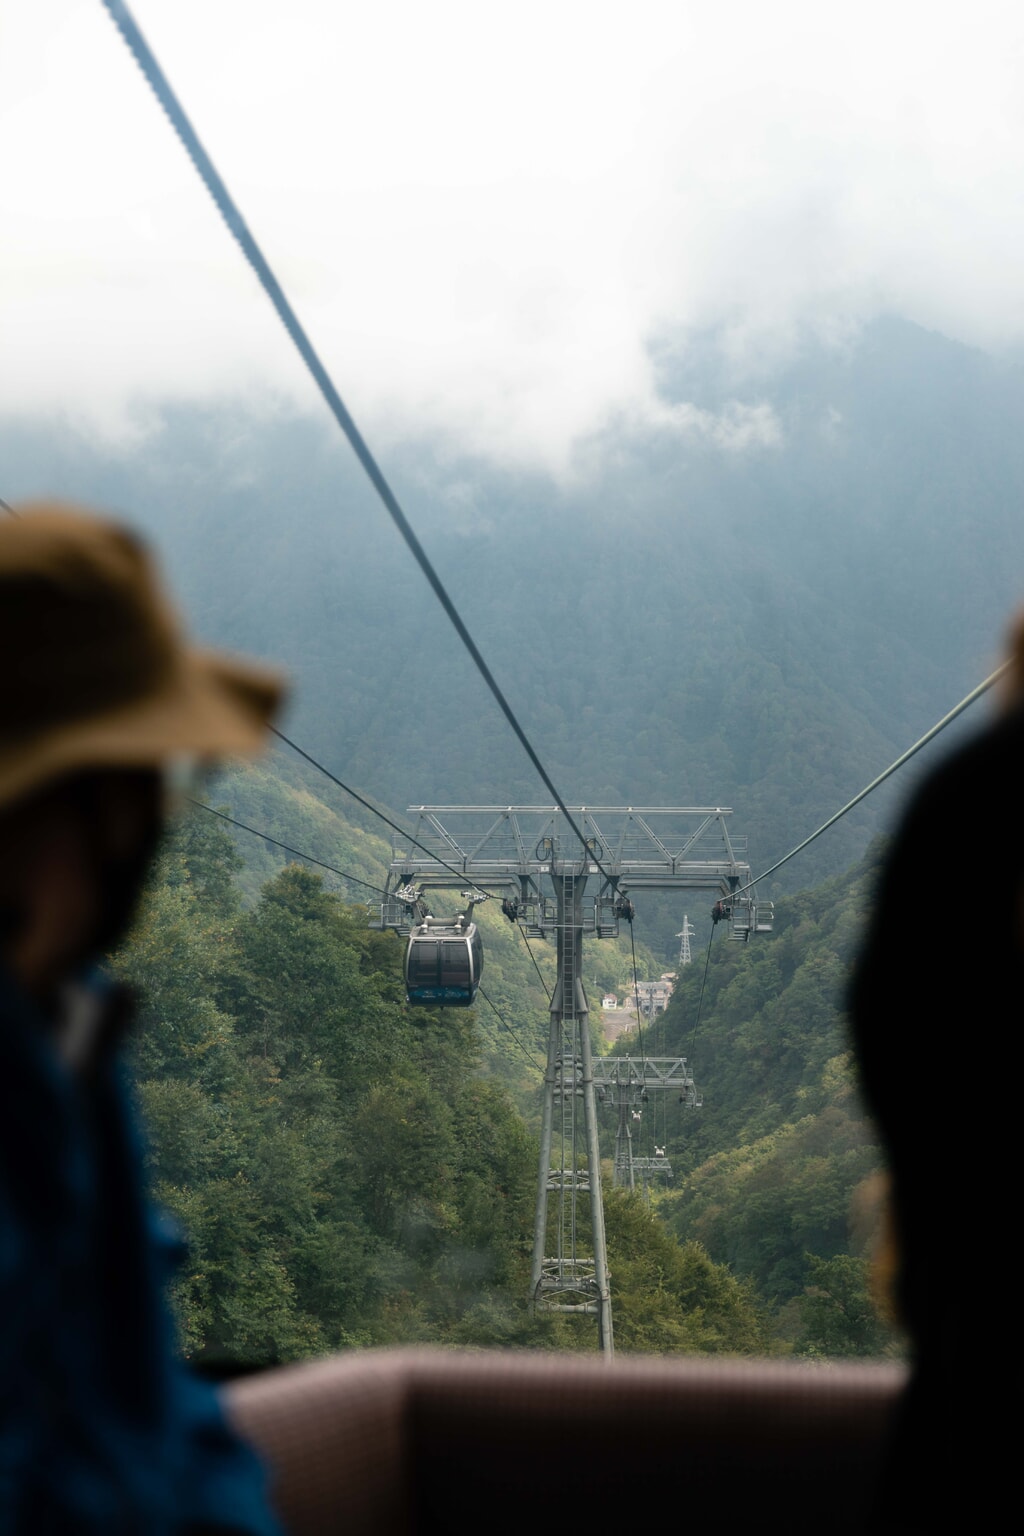 Mount Tanigawa aerial tramway